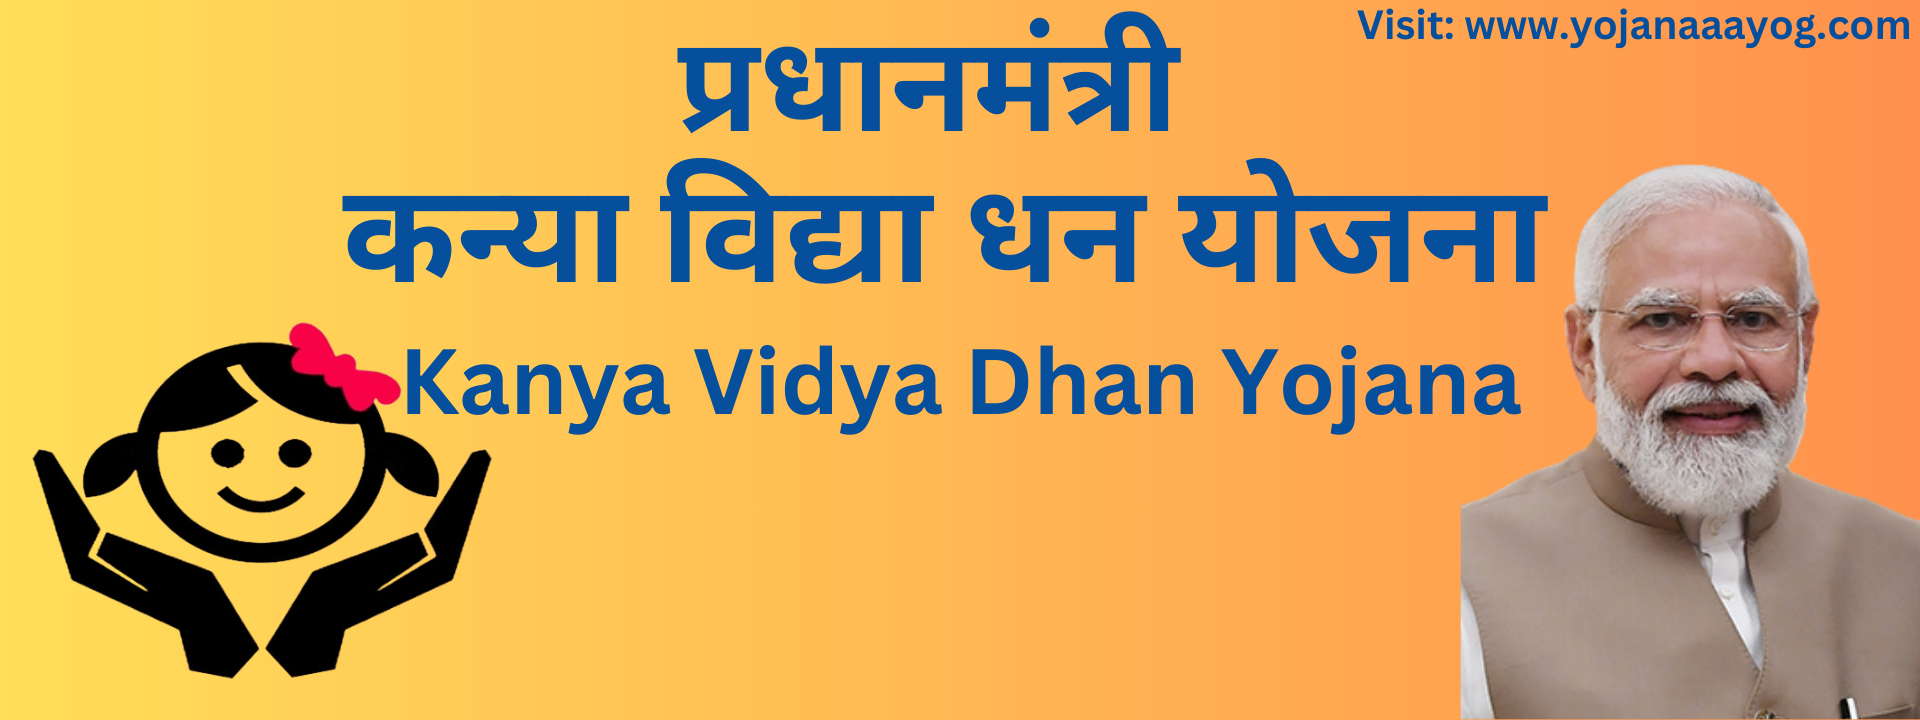 UP Kanya Vidya Dhan Yojana